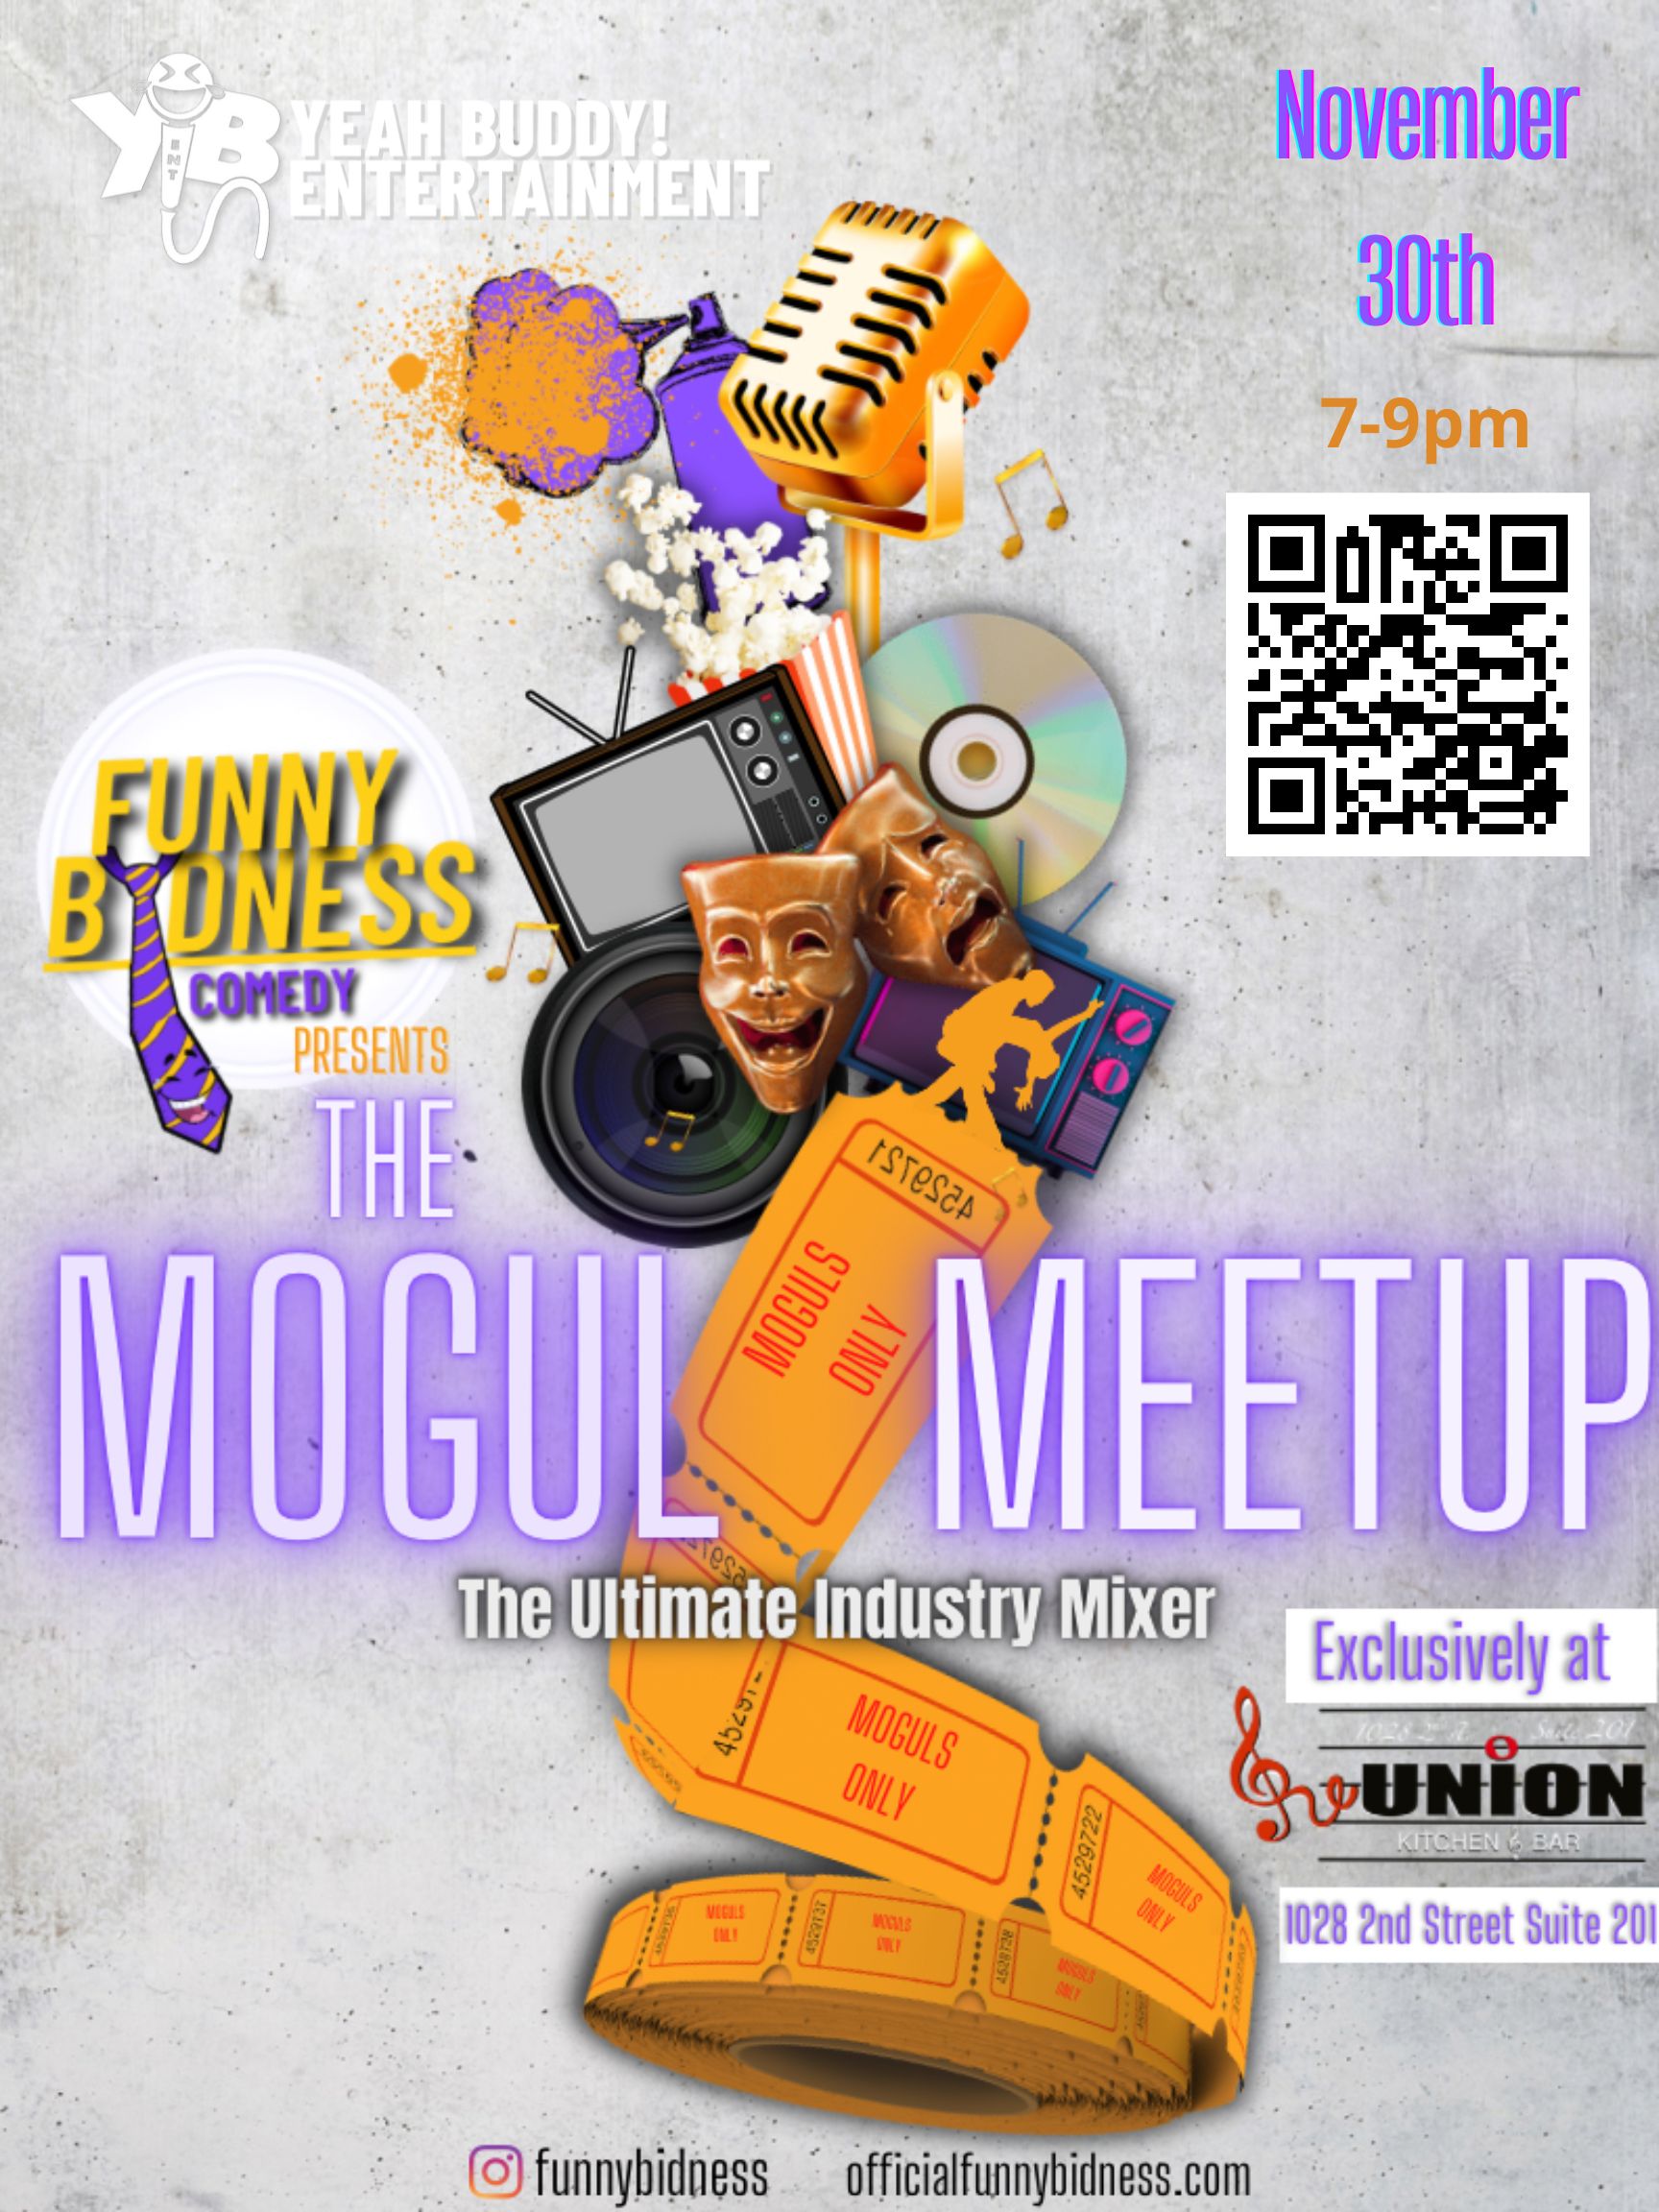 The Mogul Meet Up – Nov 30th